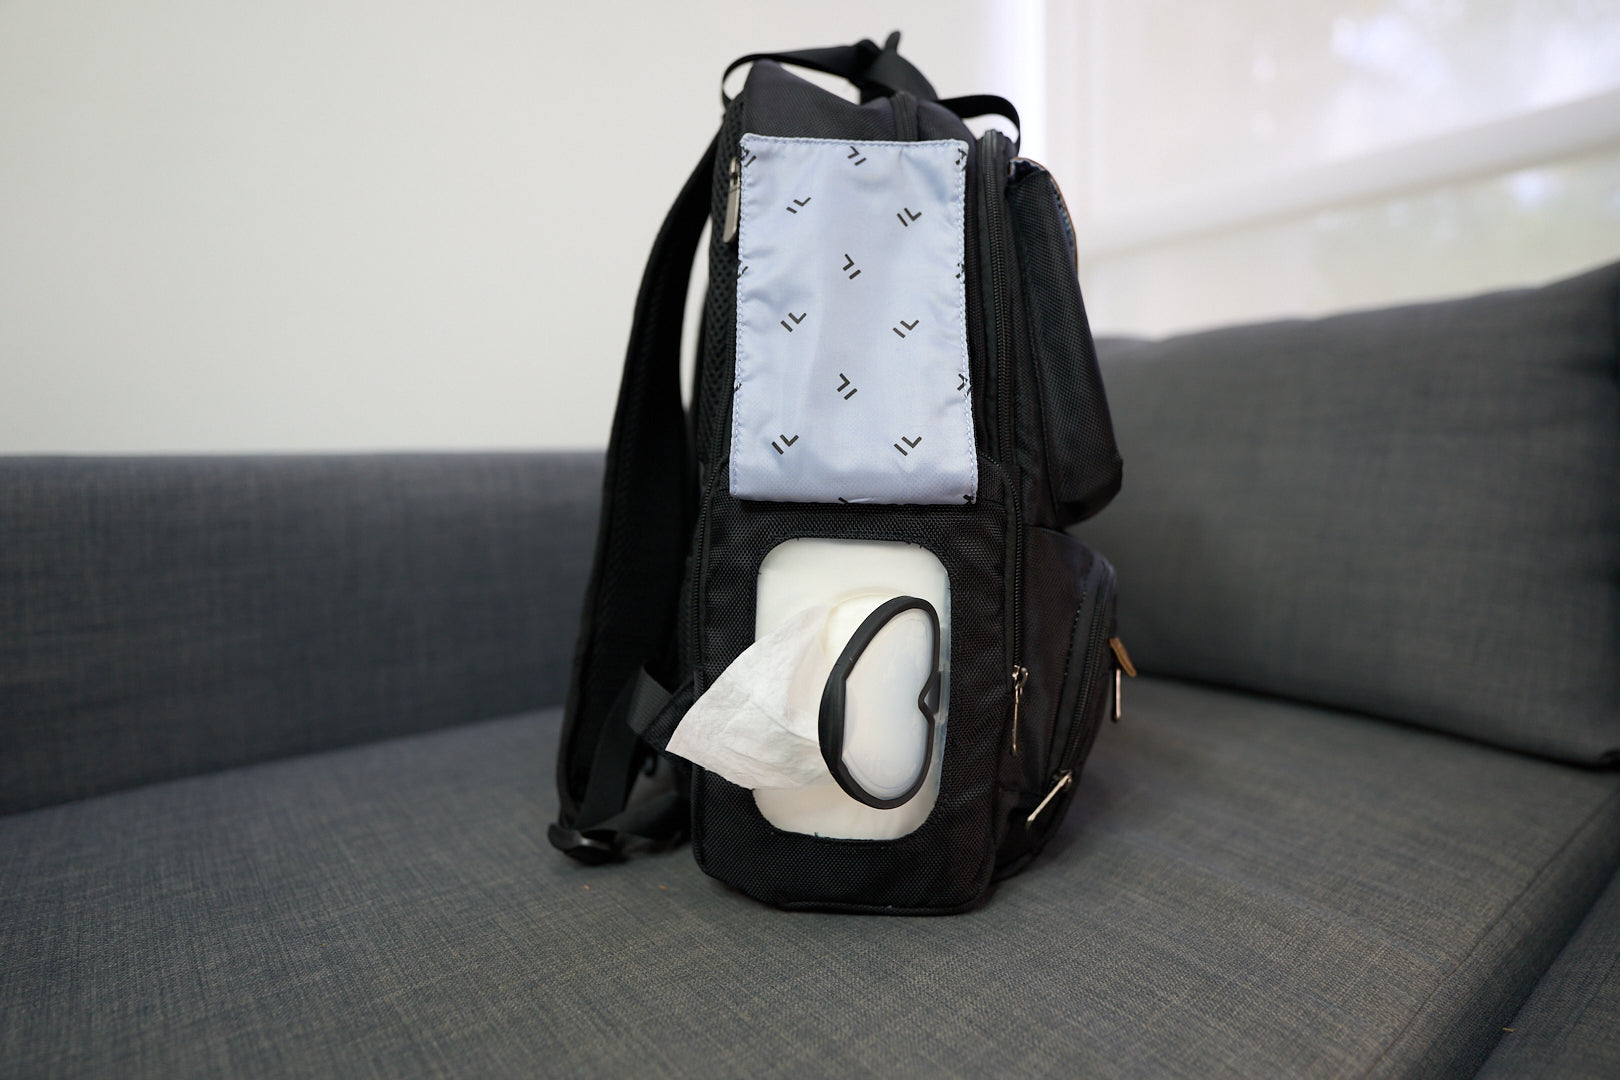 FLYDAD Backpack